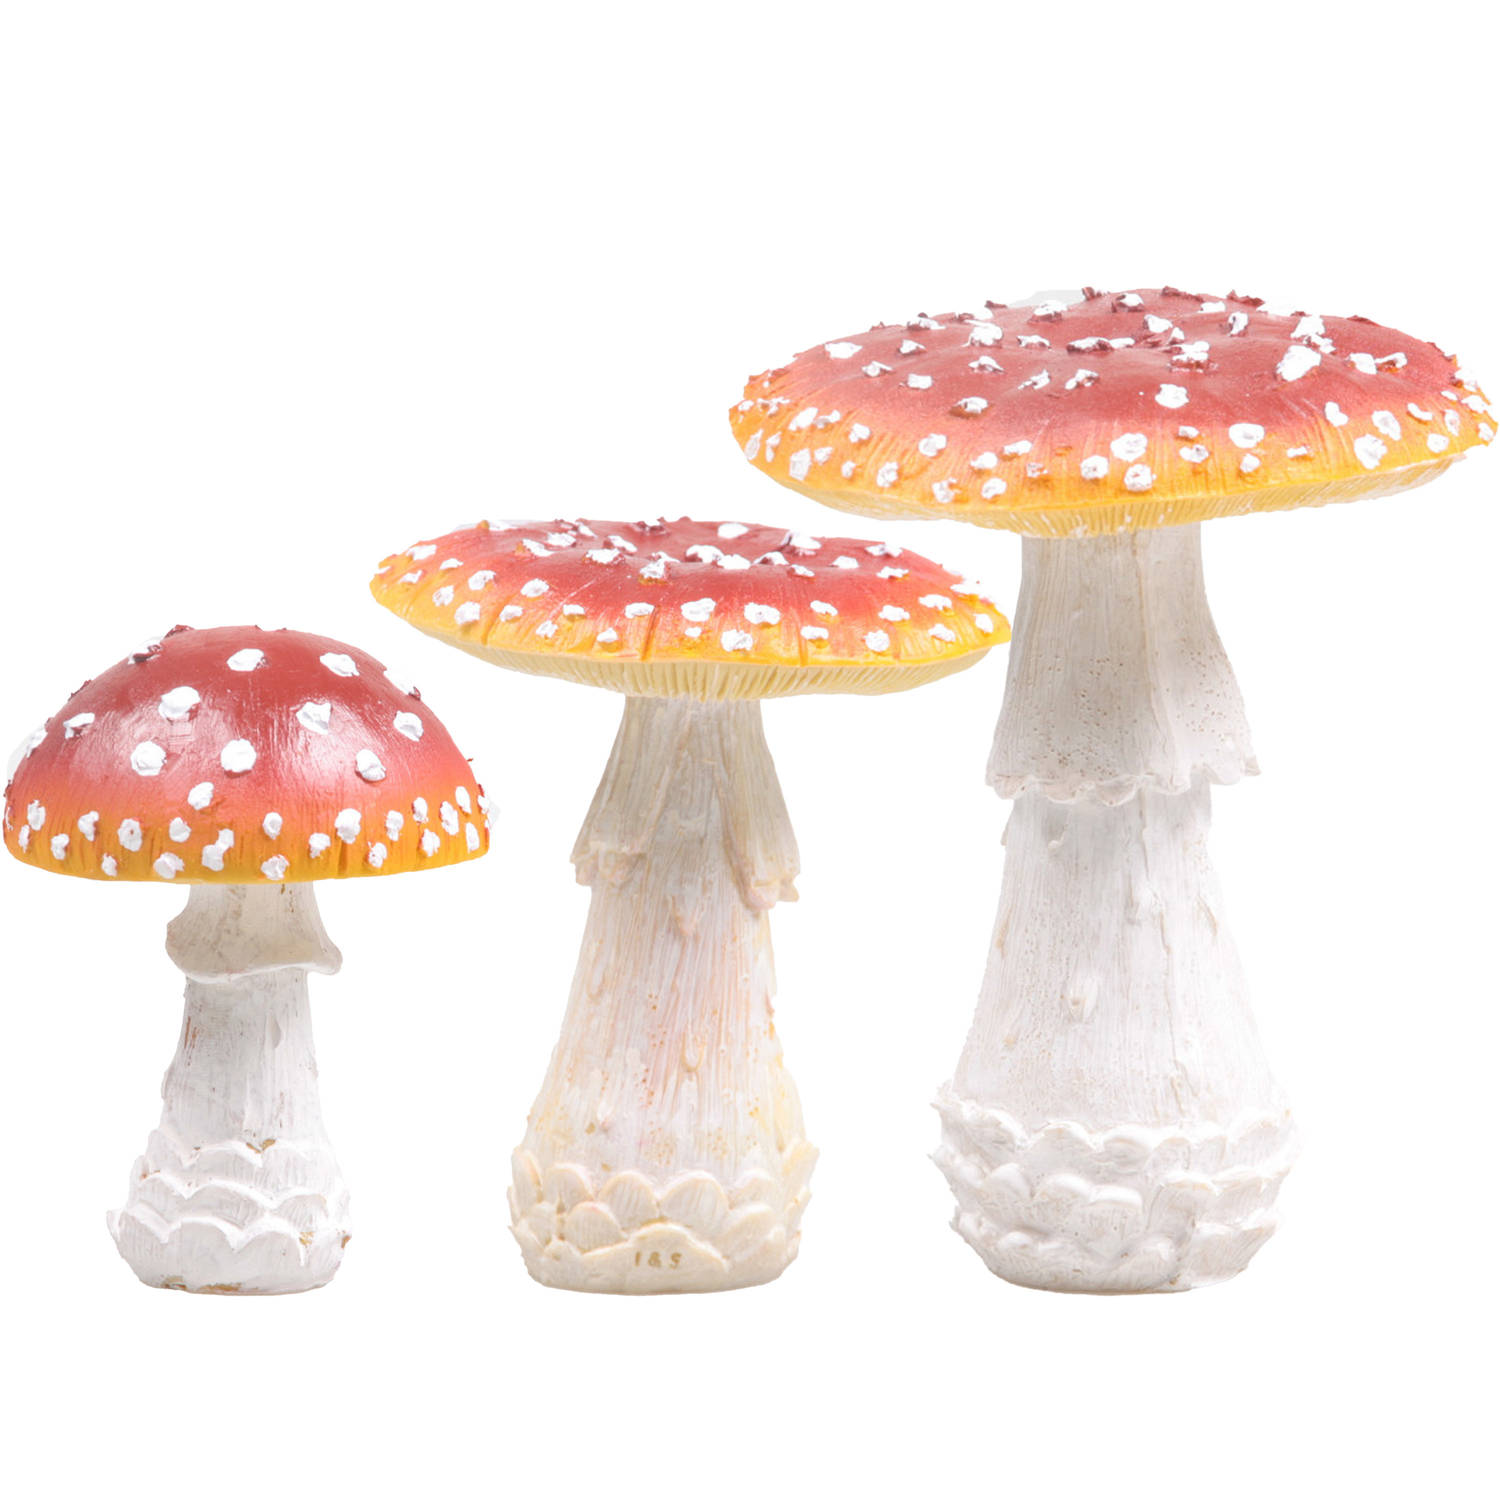 Decoratie paddenstoelen setje met 3x vliegenzwam paddenstoelen herfst thema Tuinbeelden